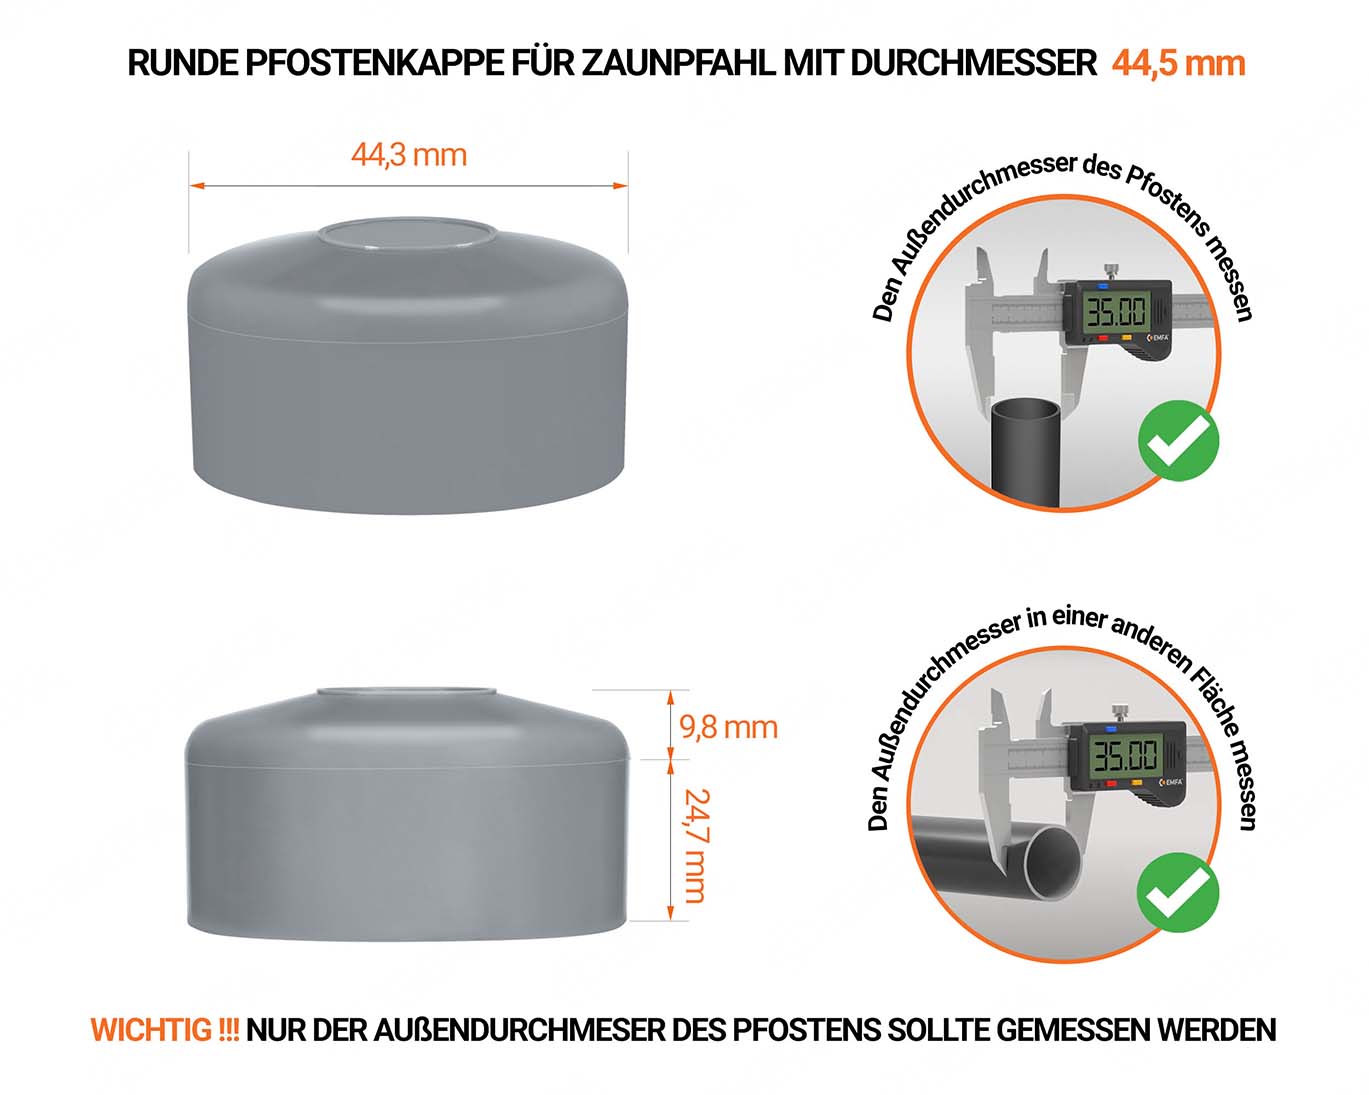 Graue Pfostenkappen rund für Pfostendurchmesser  44,5 mm mit technischen Abmessungen und Anleitung für korrekte Messung